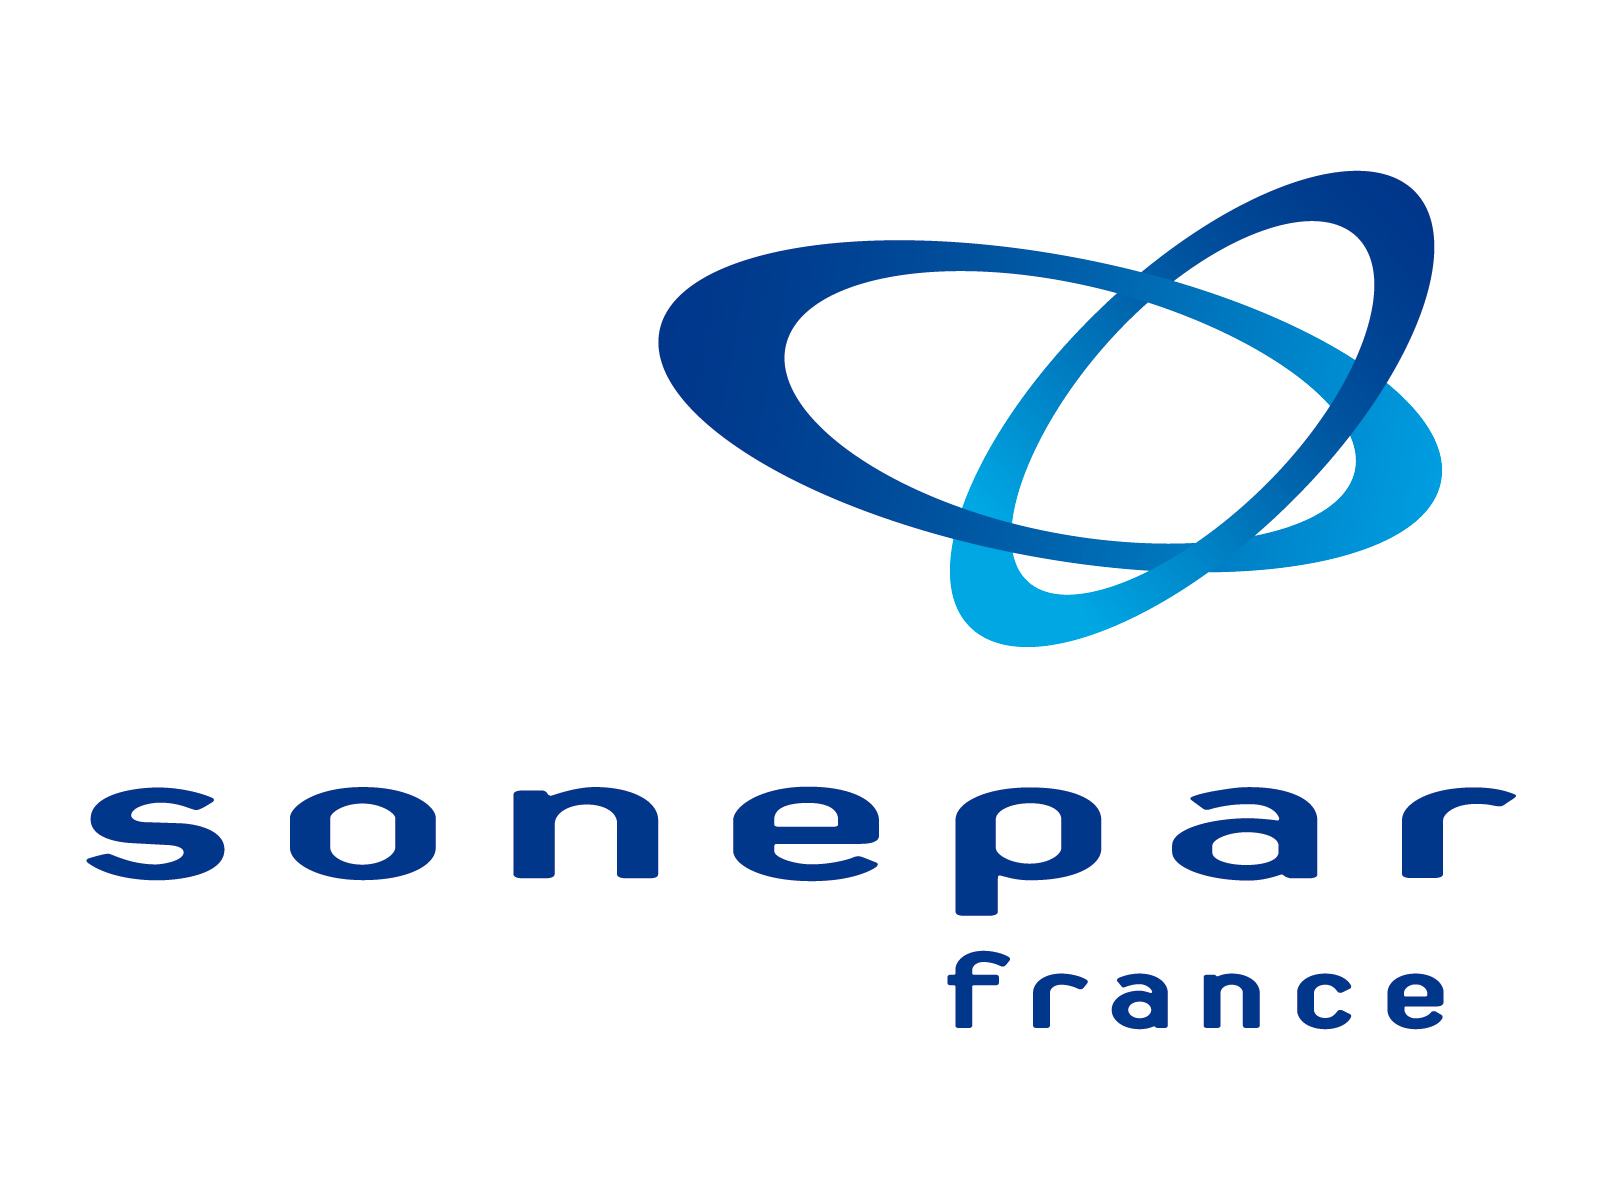 SONEPAR FRANCE